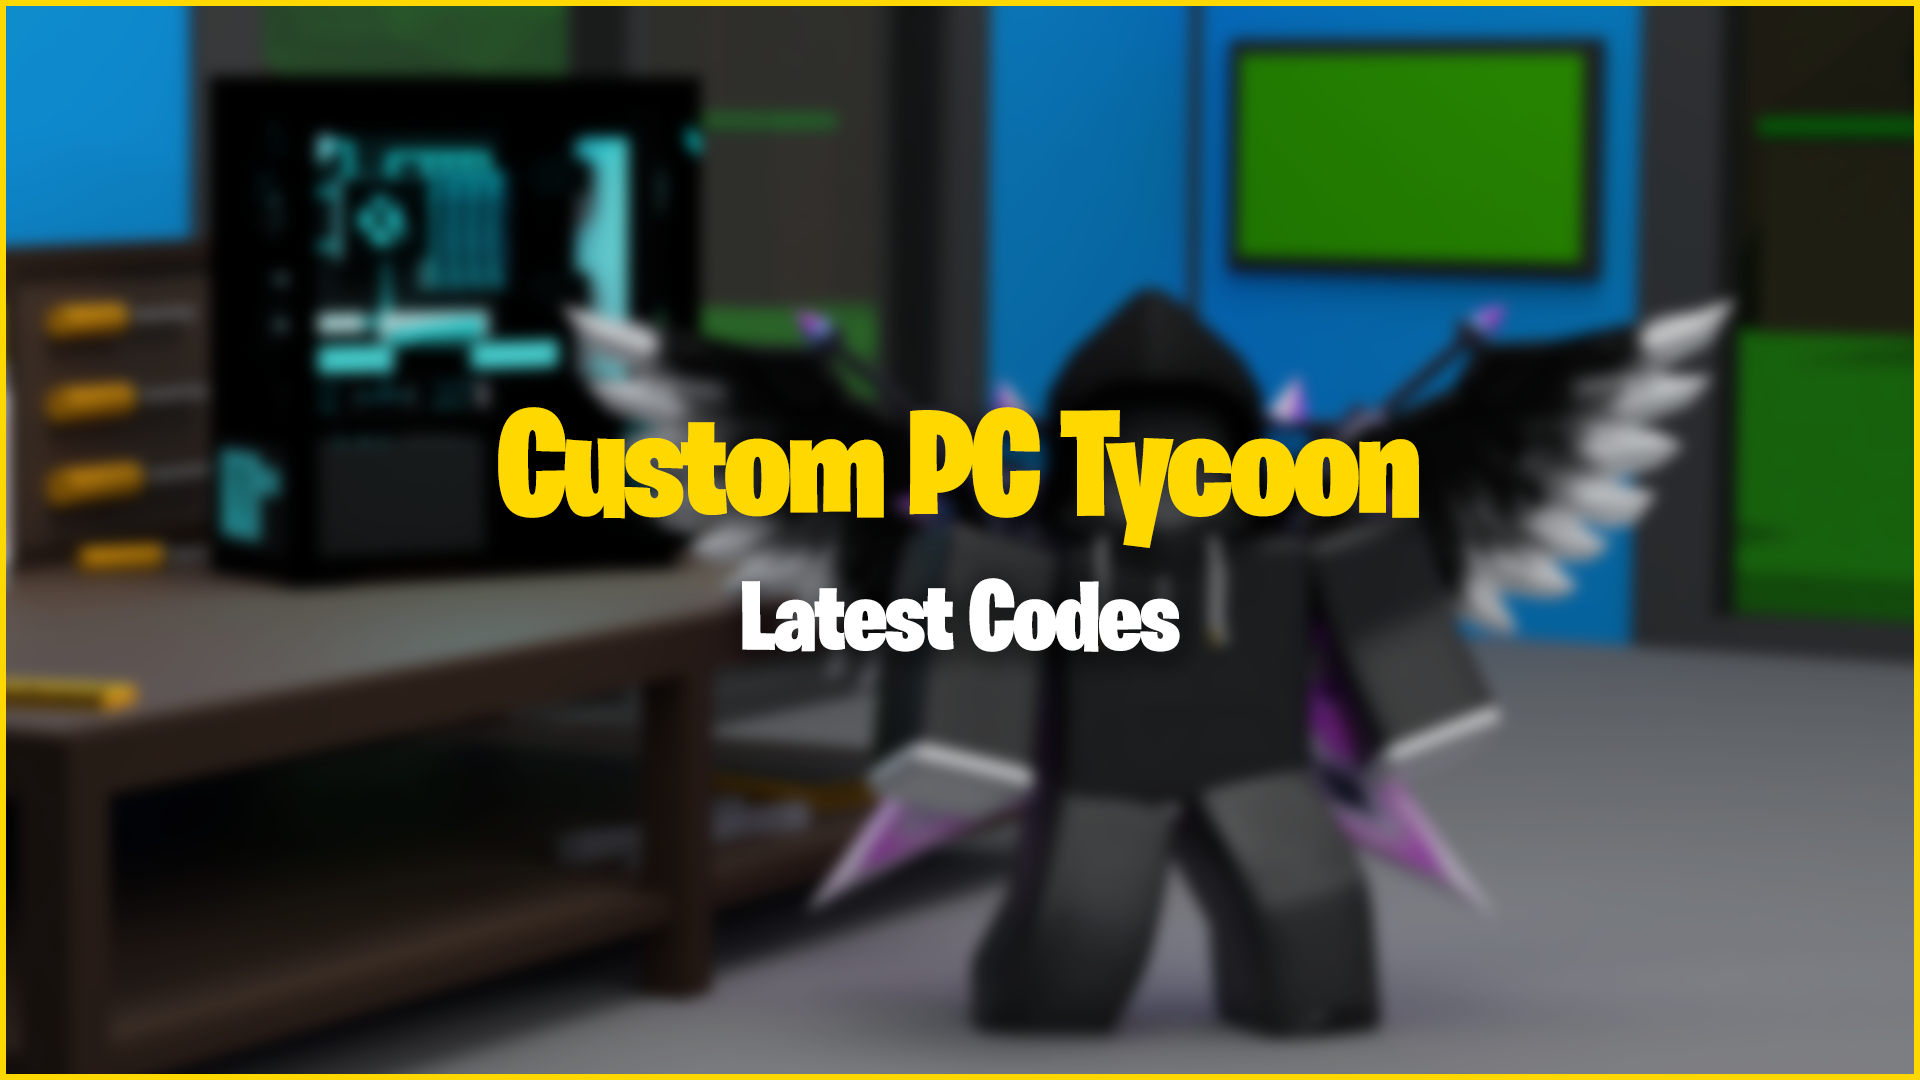 Custom PC Tycoon Codes Wiki [UPDATE][December 2023] - MrGuider